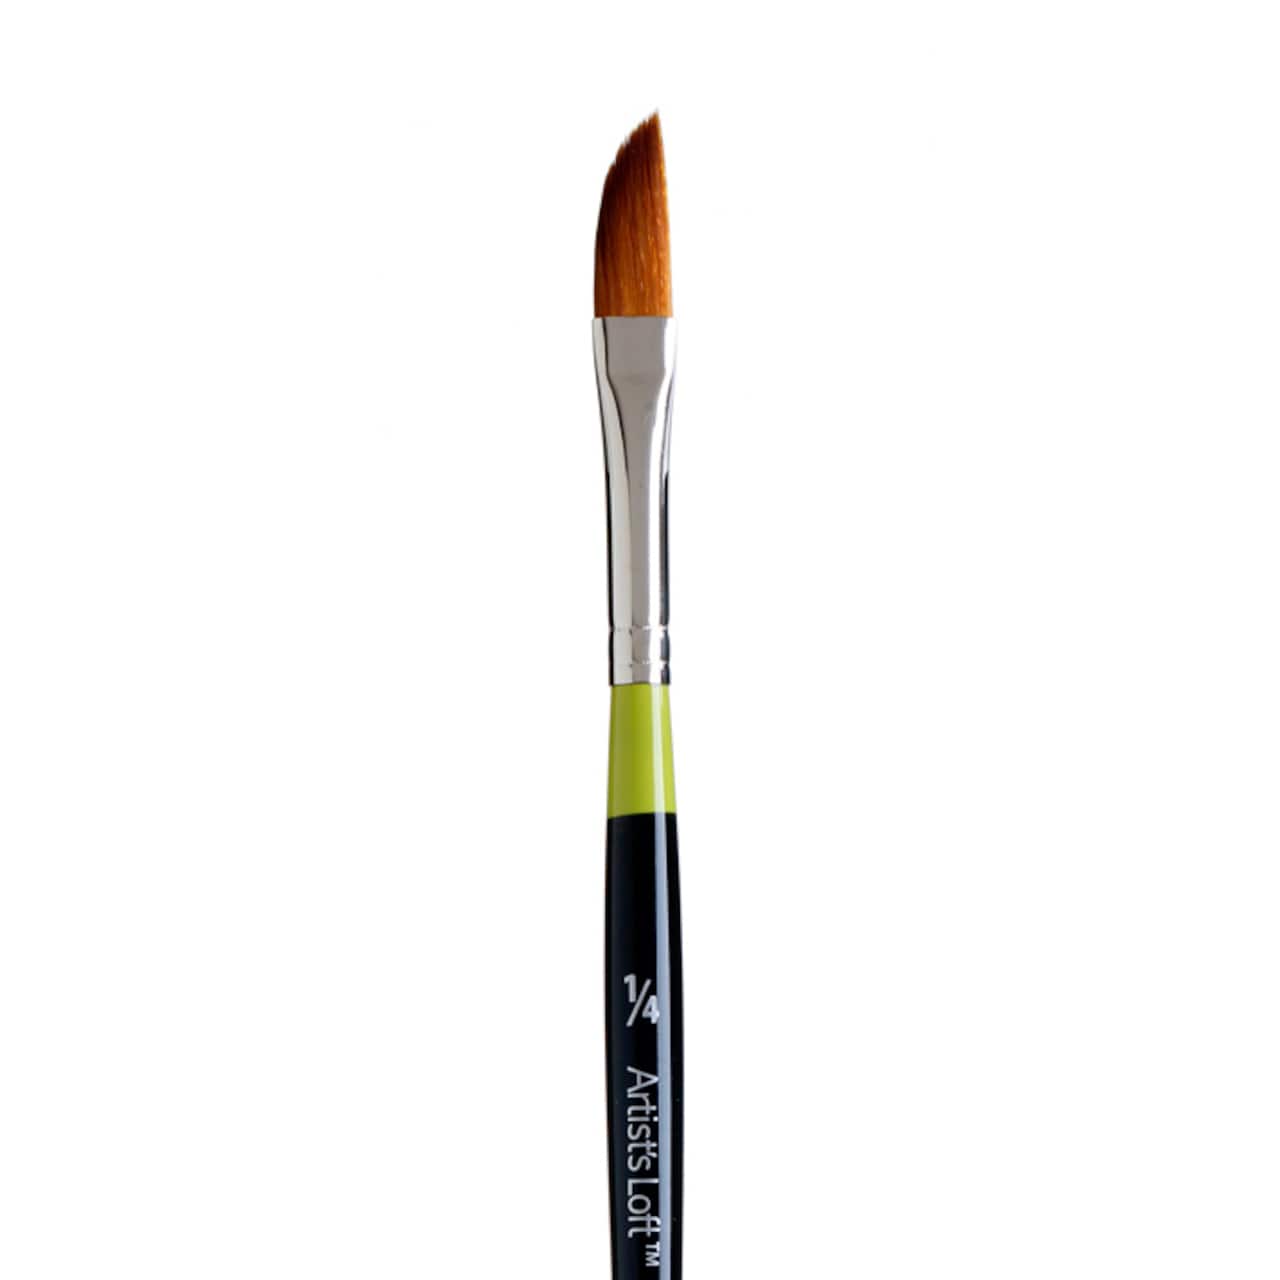 Golden Taklon Short Handle Dagger Striper Brush by Artist&#x27;s Loft&#x2122; Vienna 